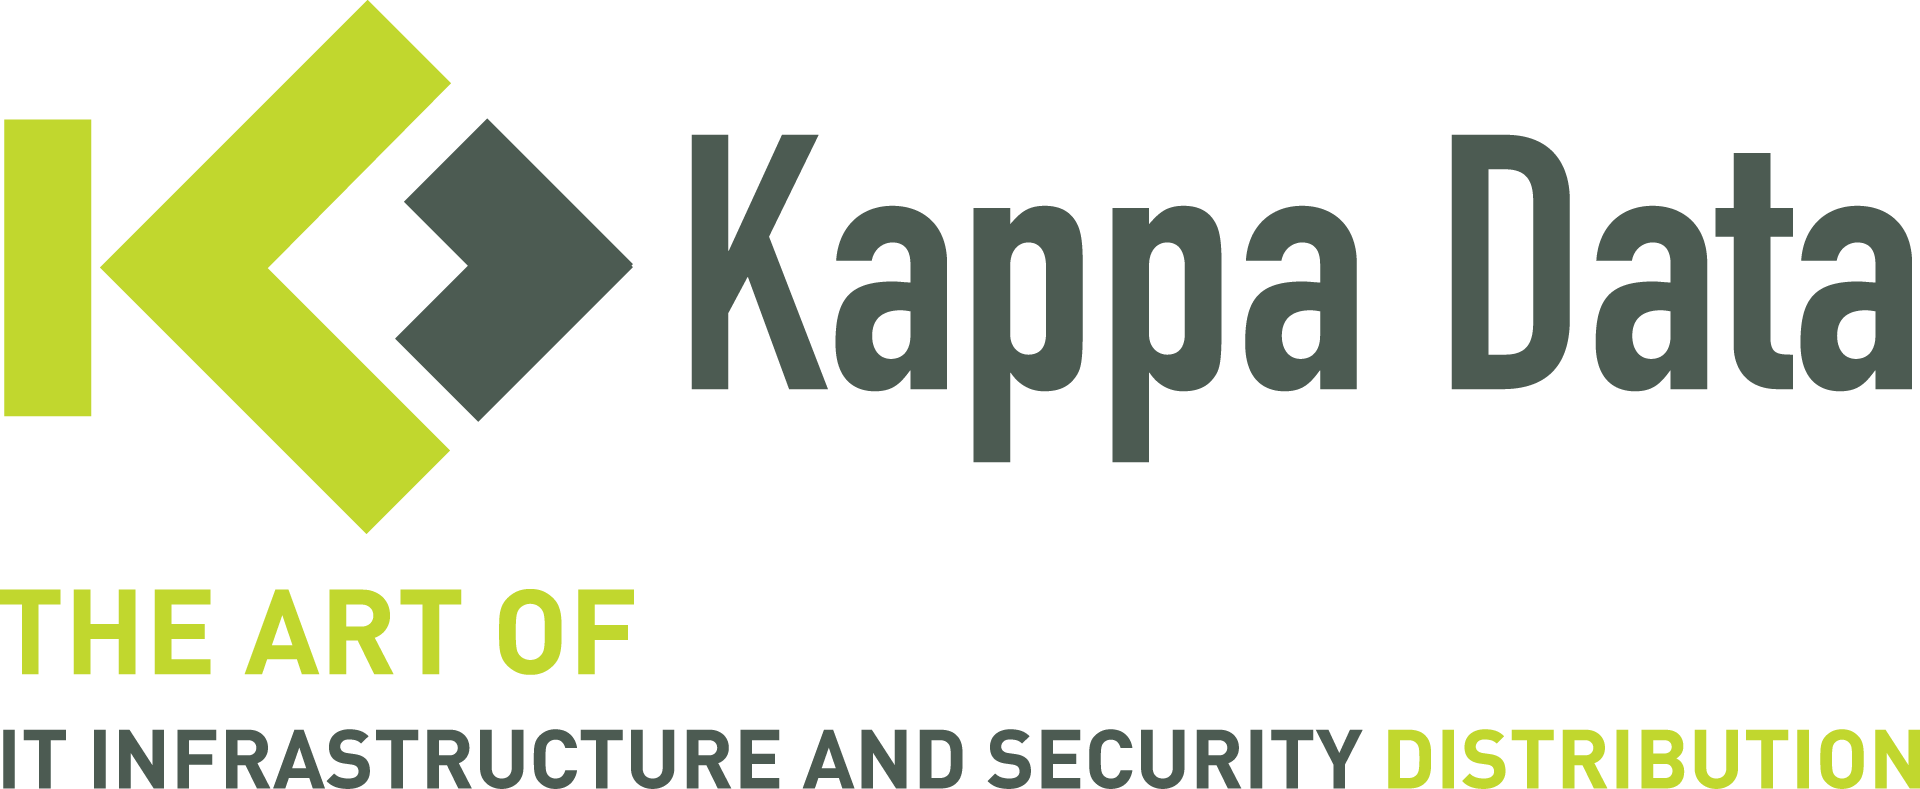 Kappa Data